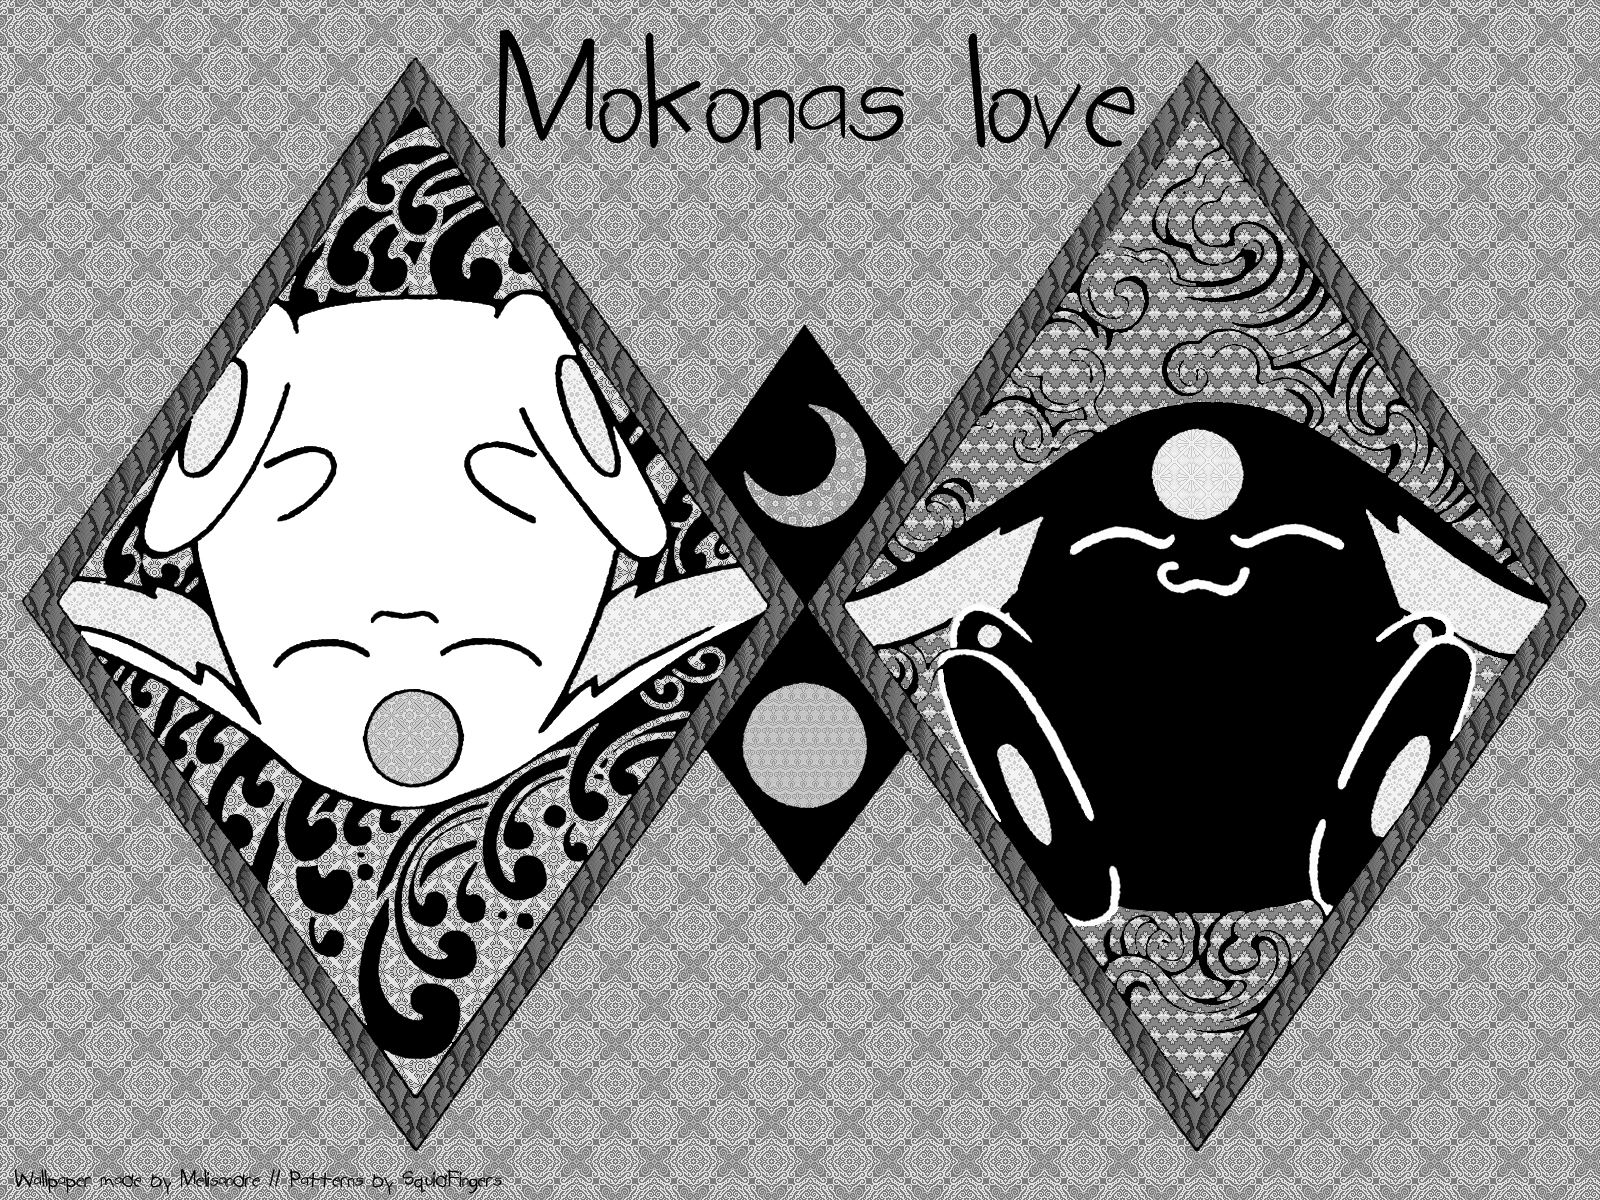 [mokonas+love+ByN.jpg]